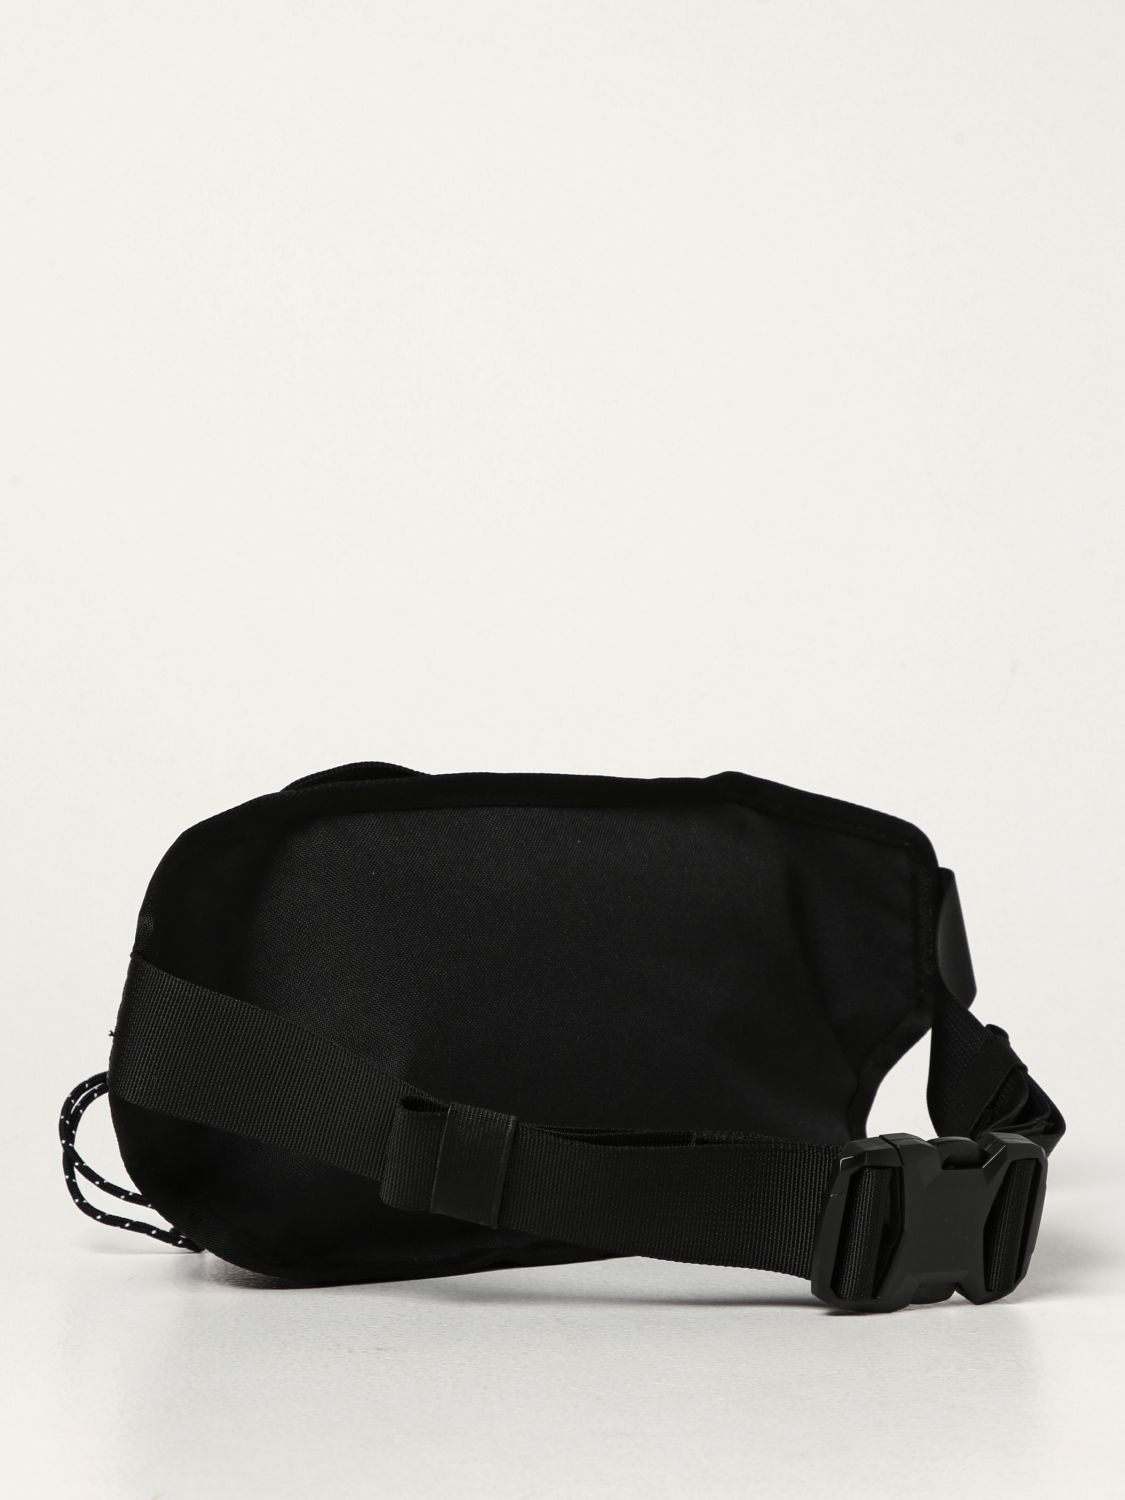 THE NORTH FACE: belt bag for men - Violet | The North Face belt bag ...